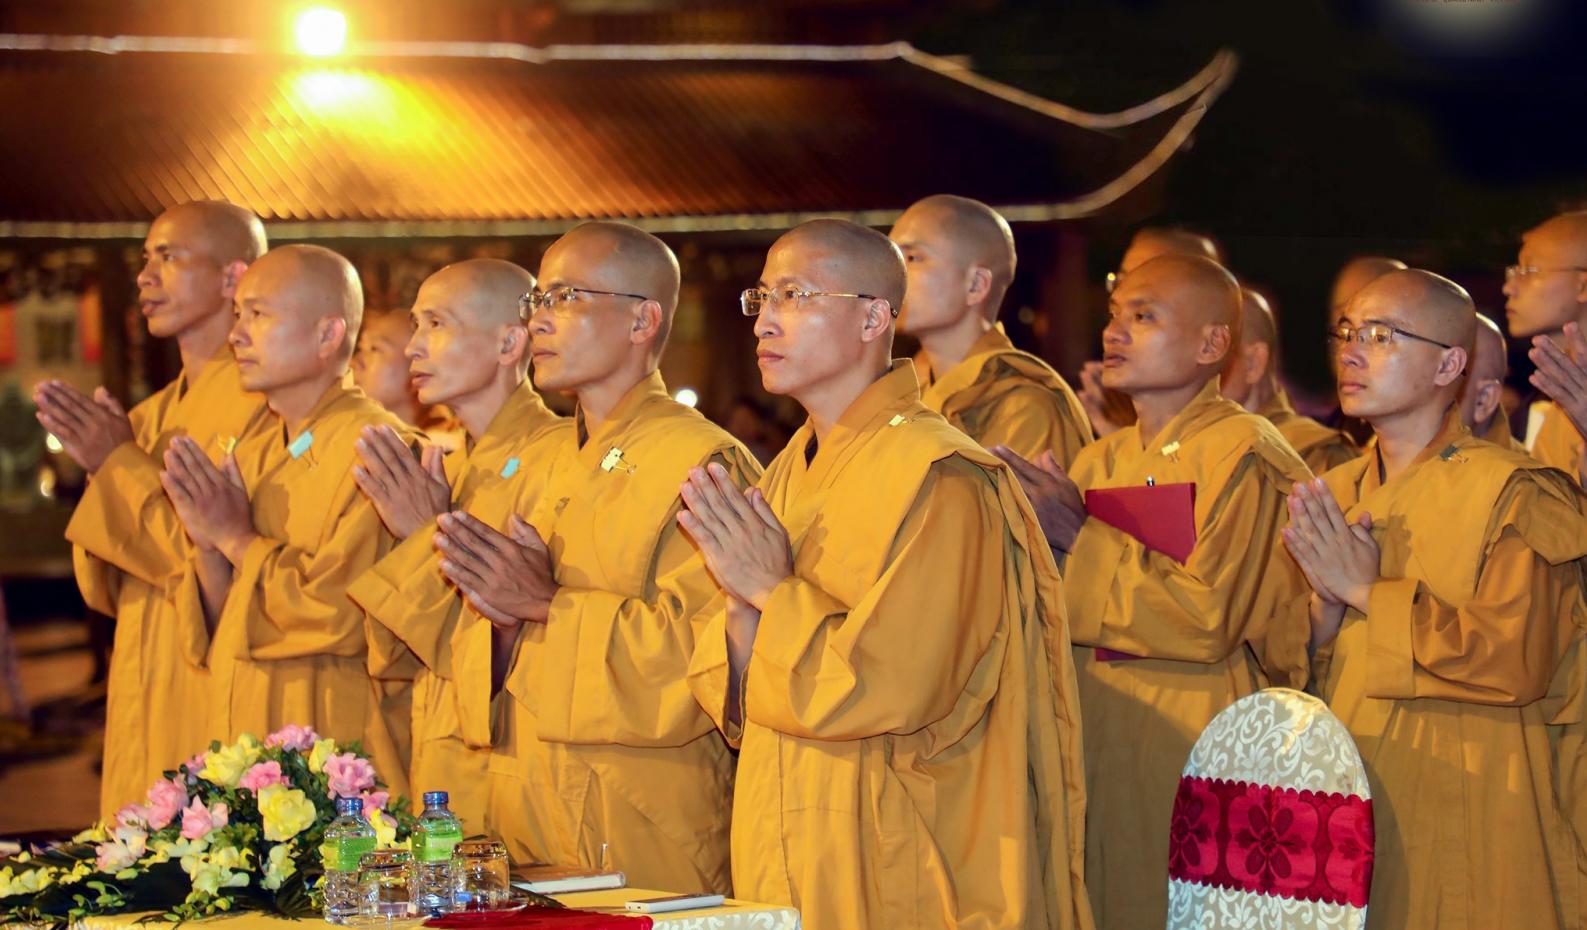 Ngôi báu thứ ba chính là Tăng Bảo, những người rời bỏ đời sống gia đình để dành trọn cuộc đời thực hành theo giáo pháp của Đức Phật, hướng đến sự giải thoát.